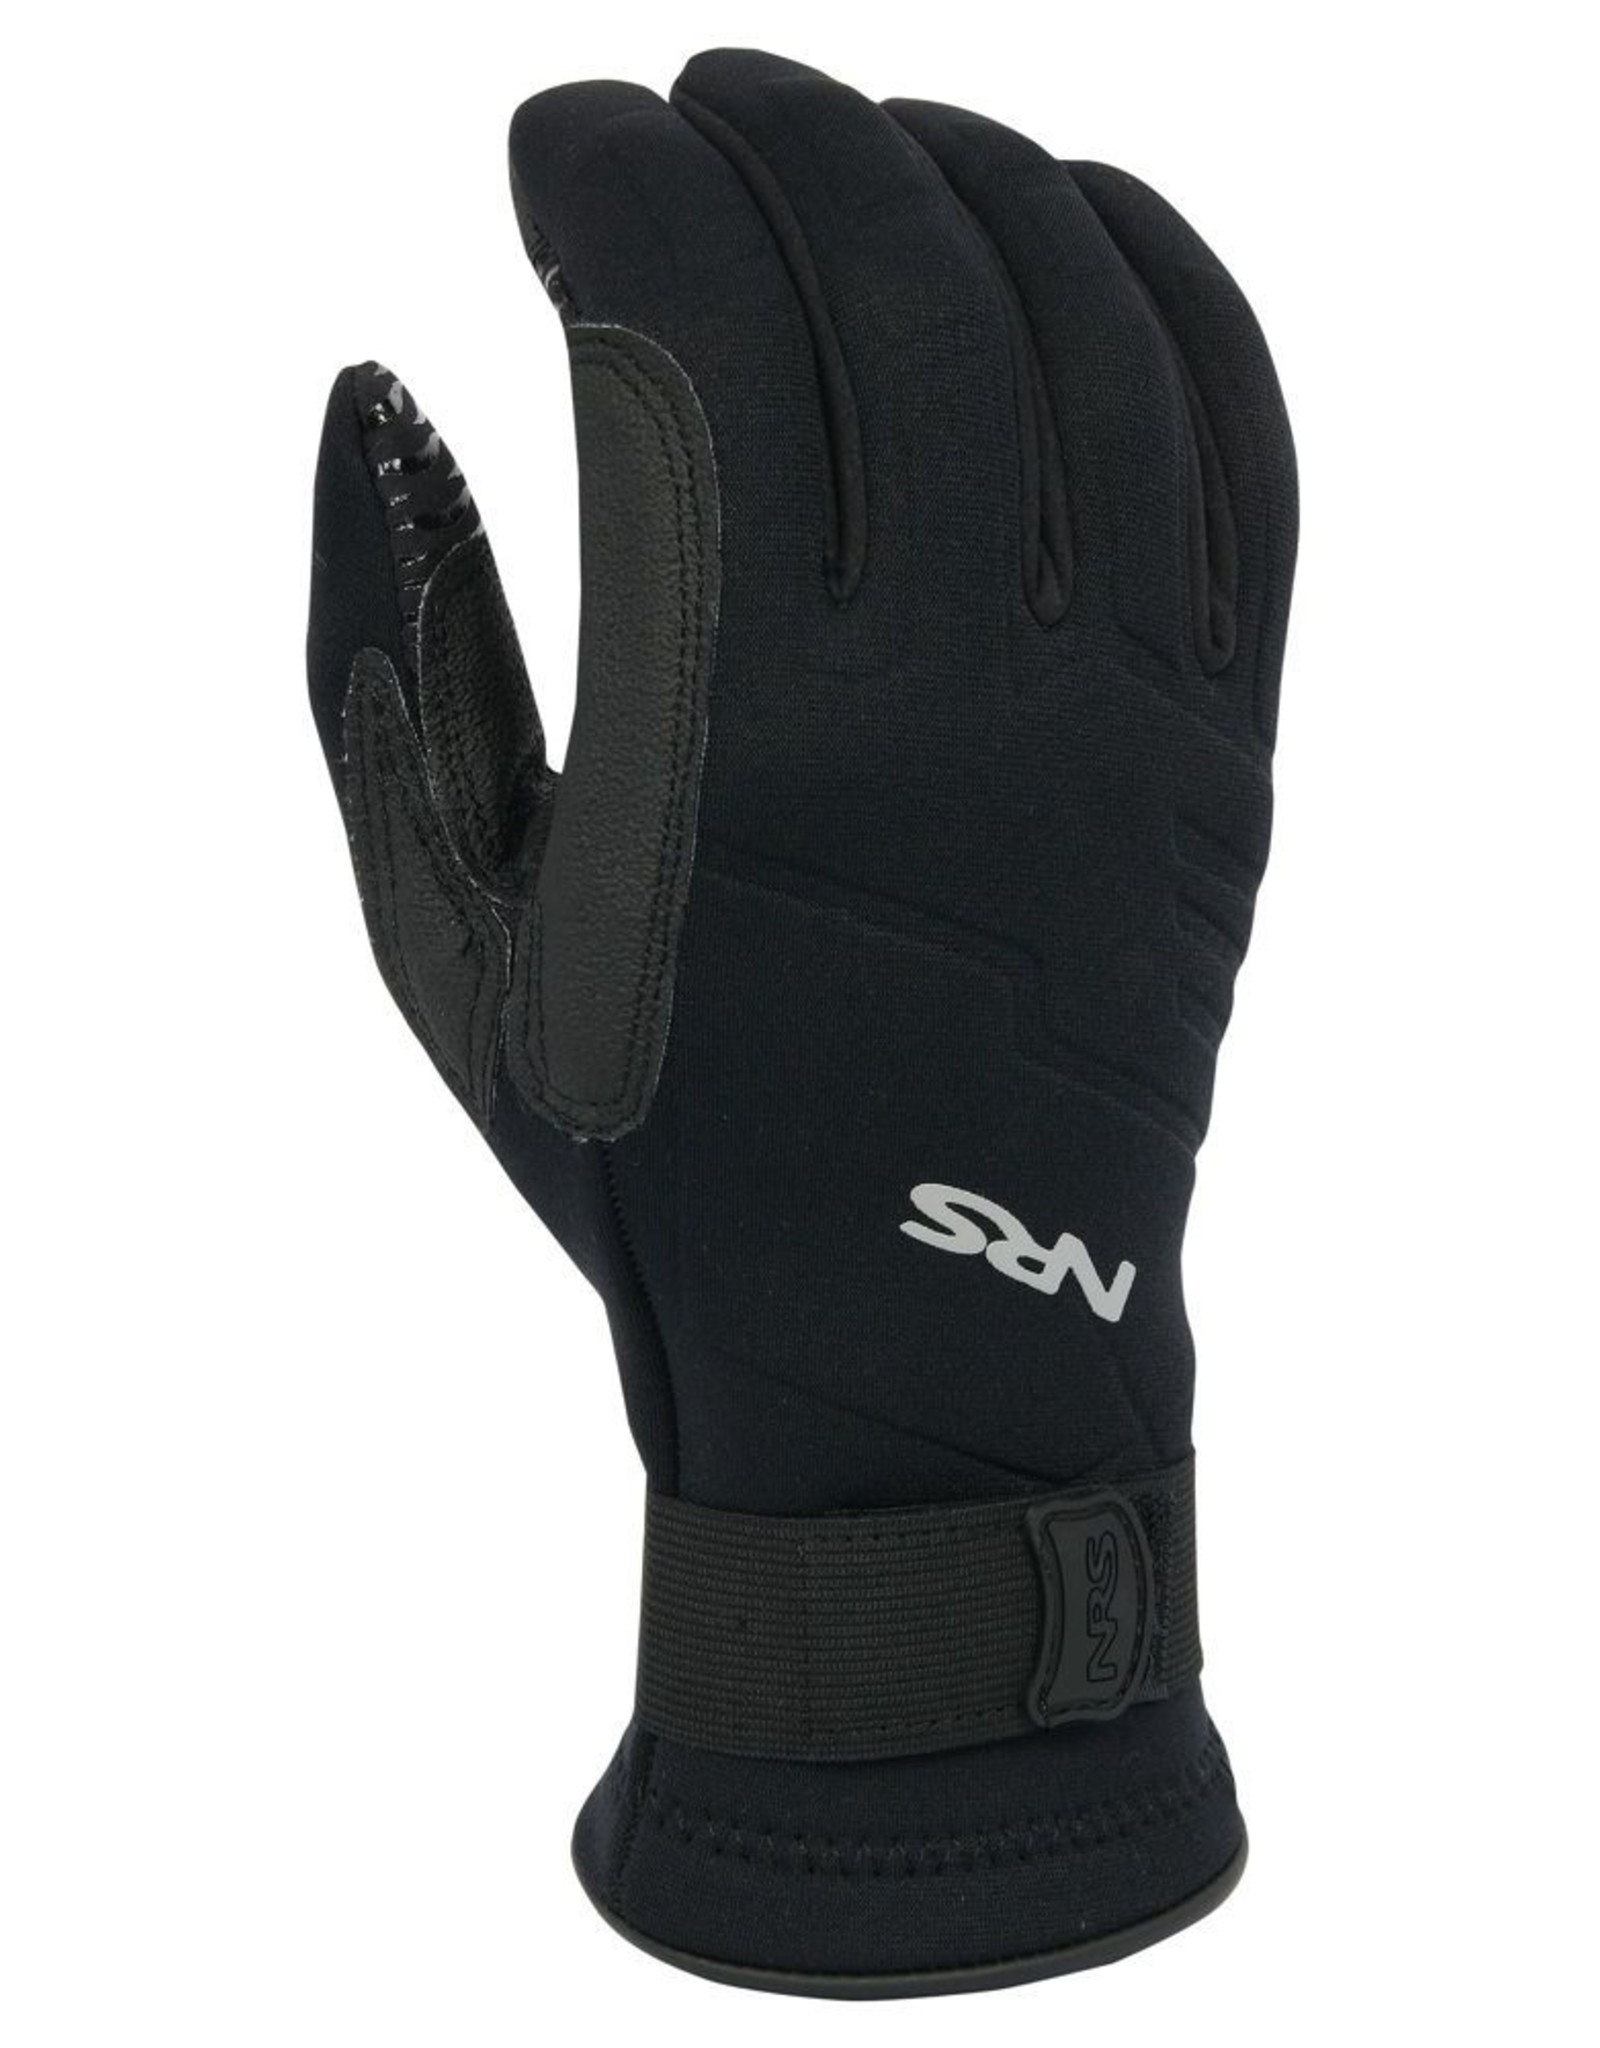 NRS NRS Paddler's Gloves